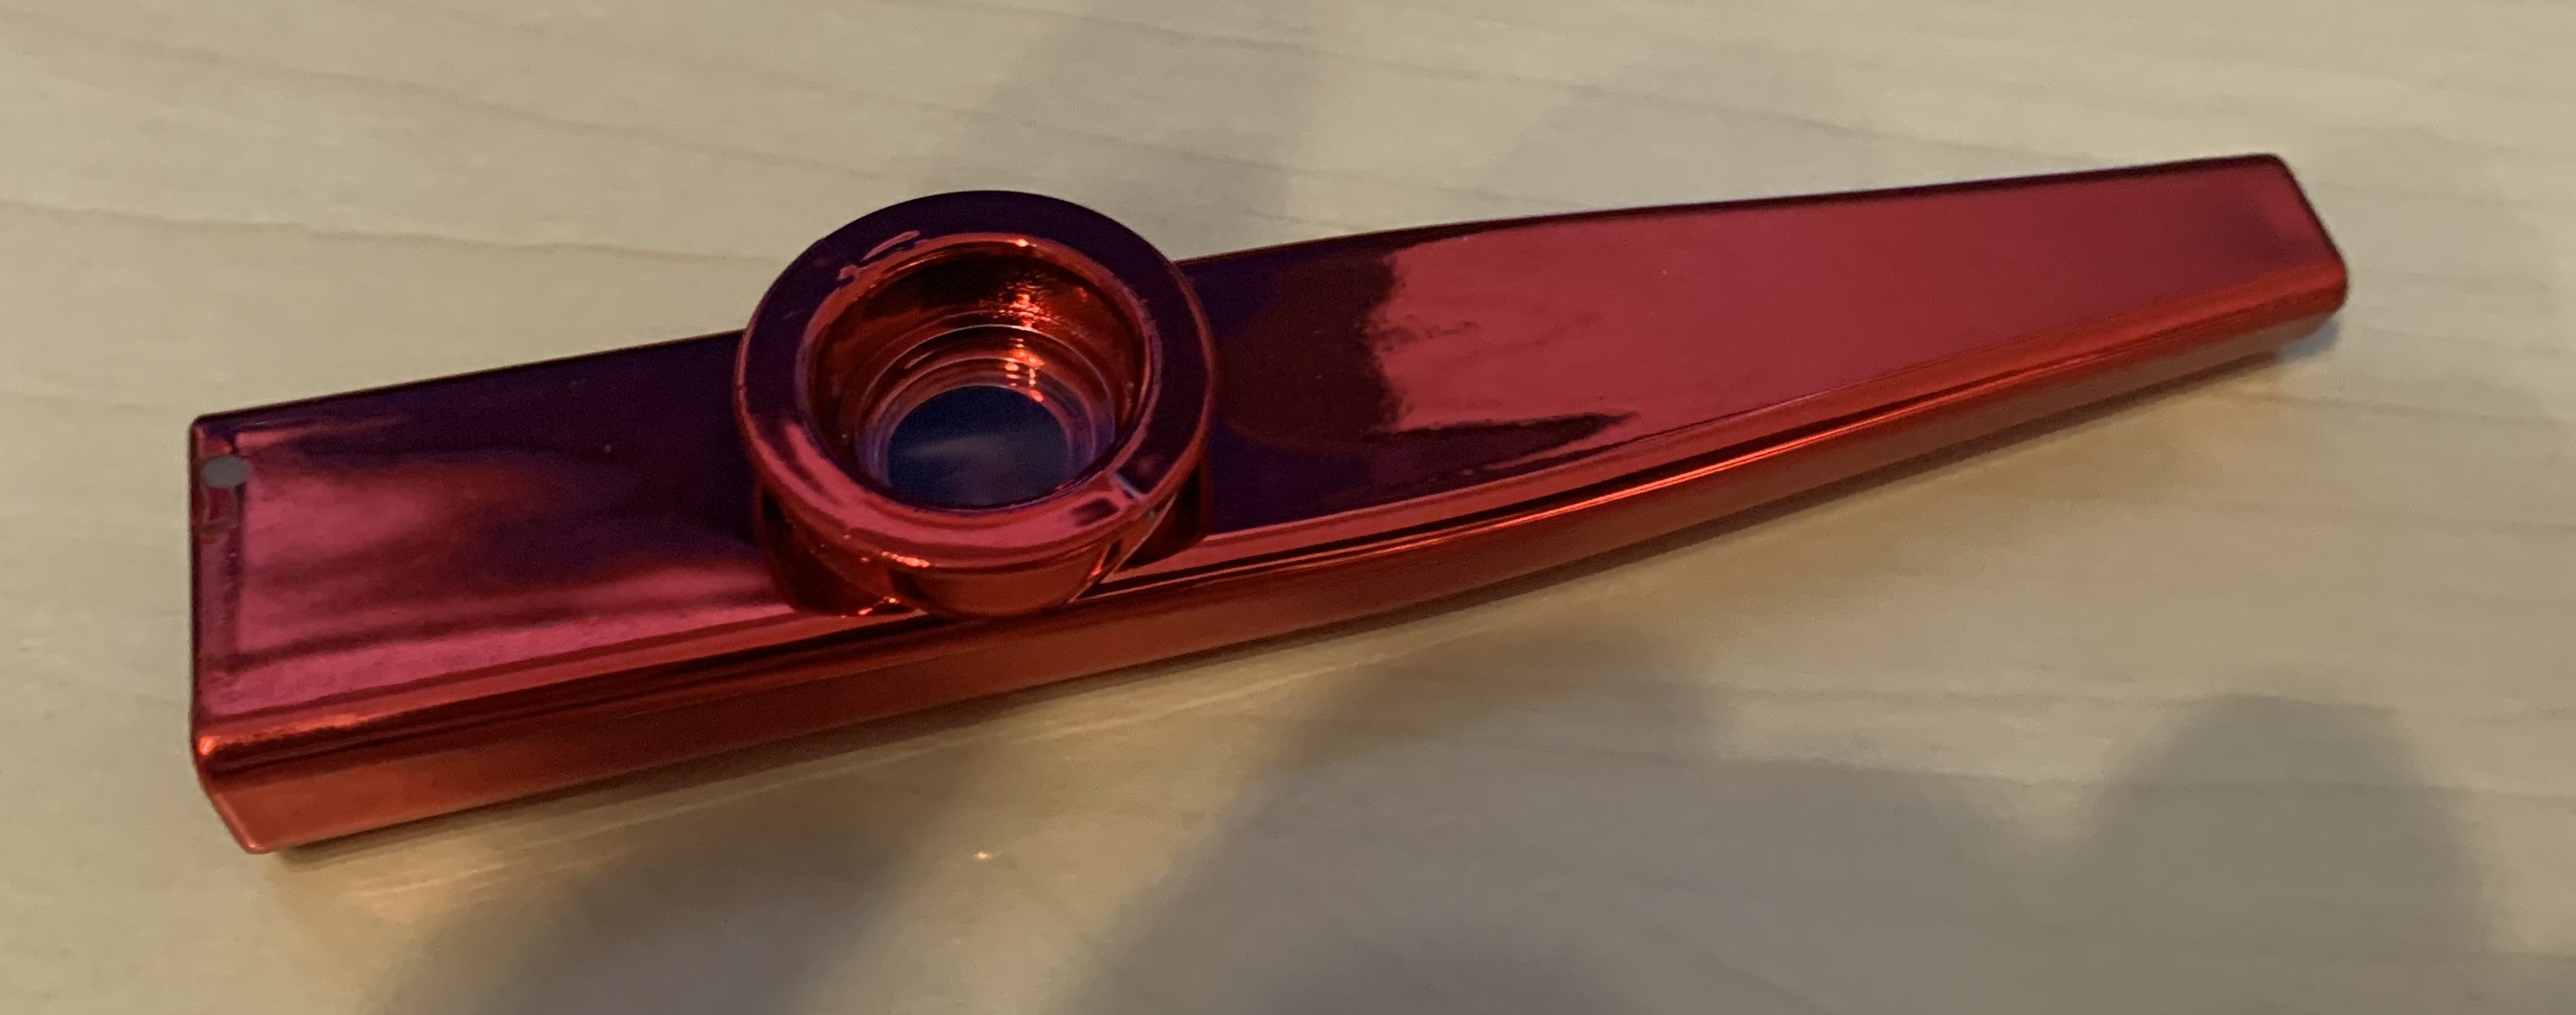 4 x Kazoo aus Aluminiumlegierung in den Farben: Gold-Silber-Rot-Blau + Umhängegurt + Ersatzmembranen